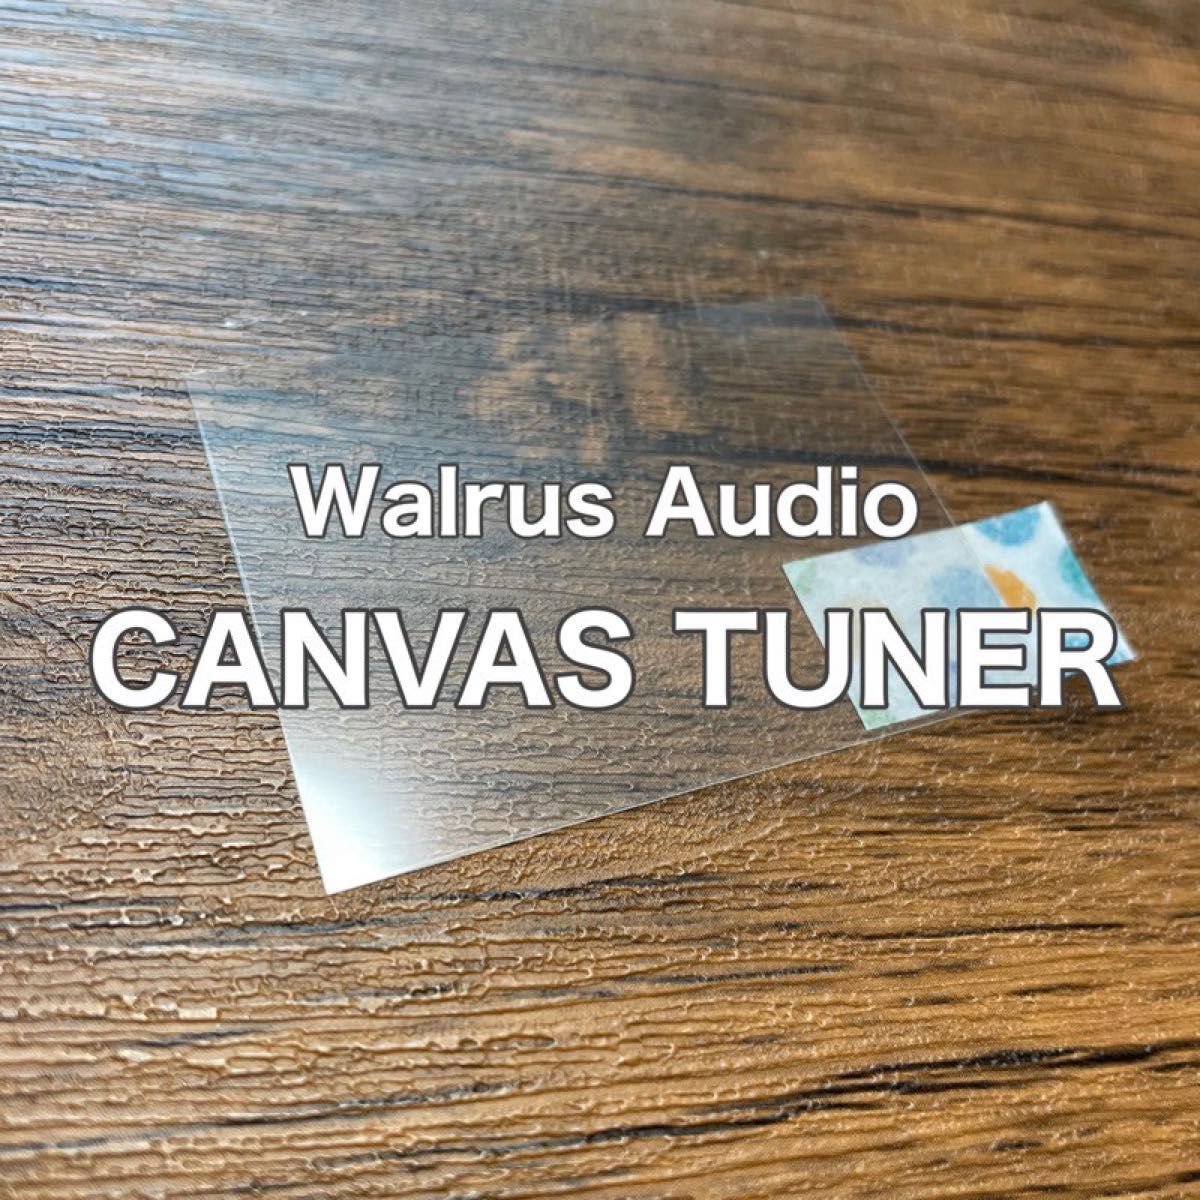 Walrus Audio Canvas Tuner チューナー 保護フィルム